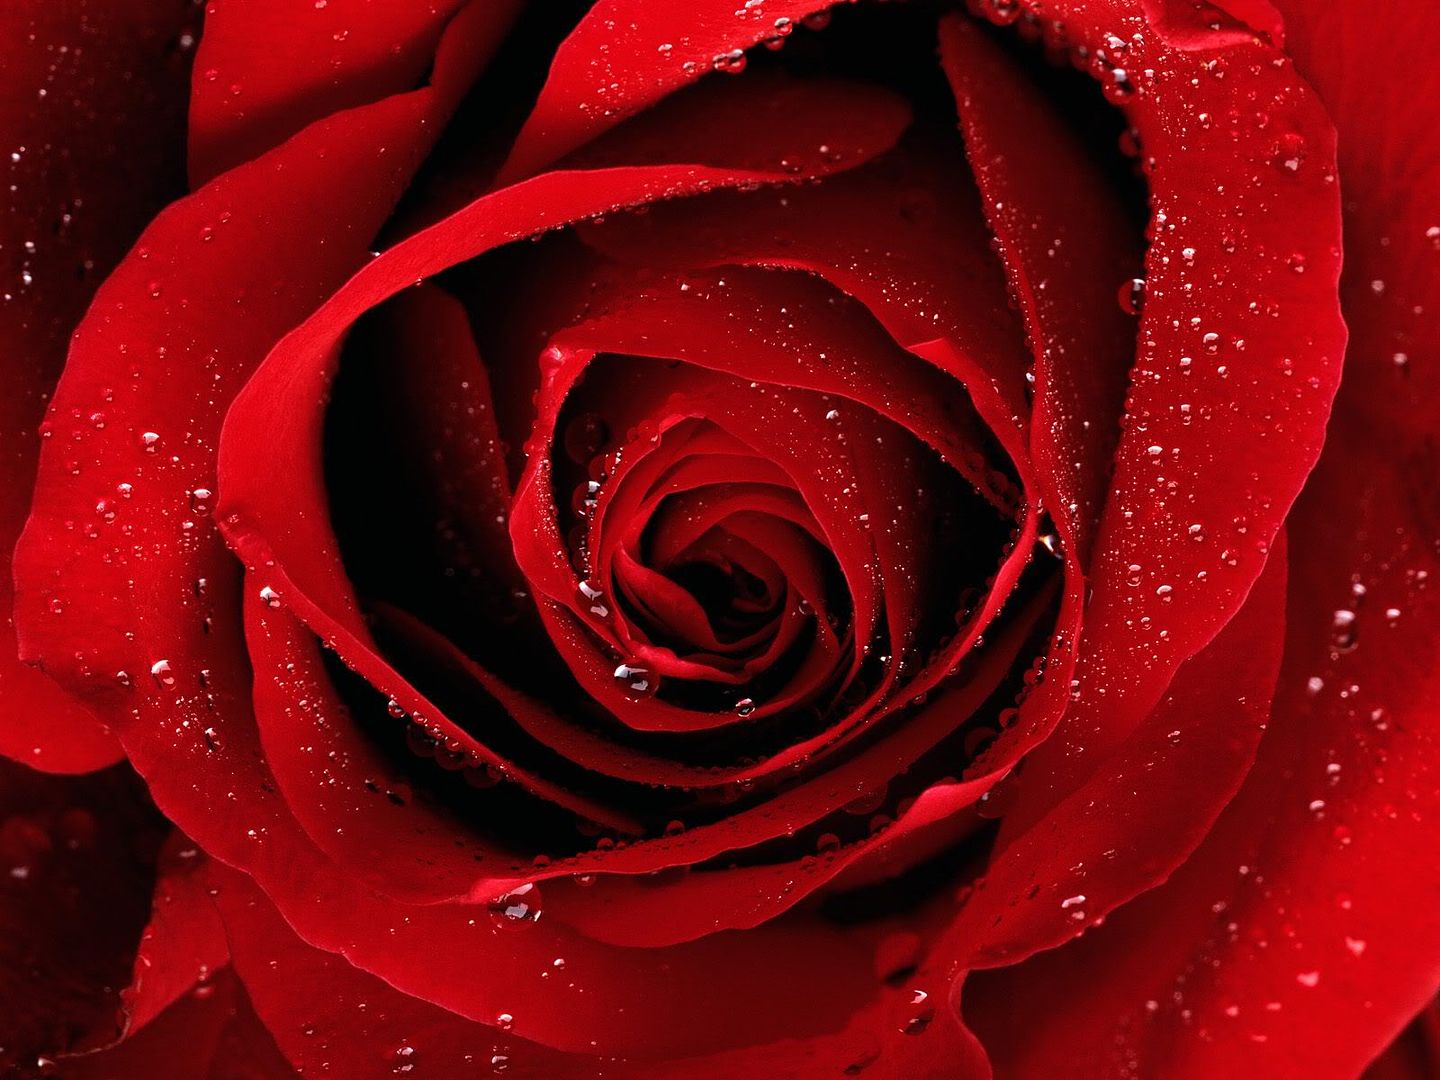 redrose2.jpg Red Rose image by sallys8906